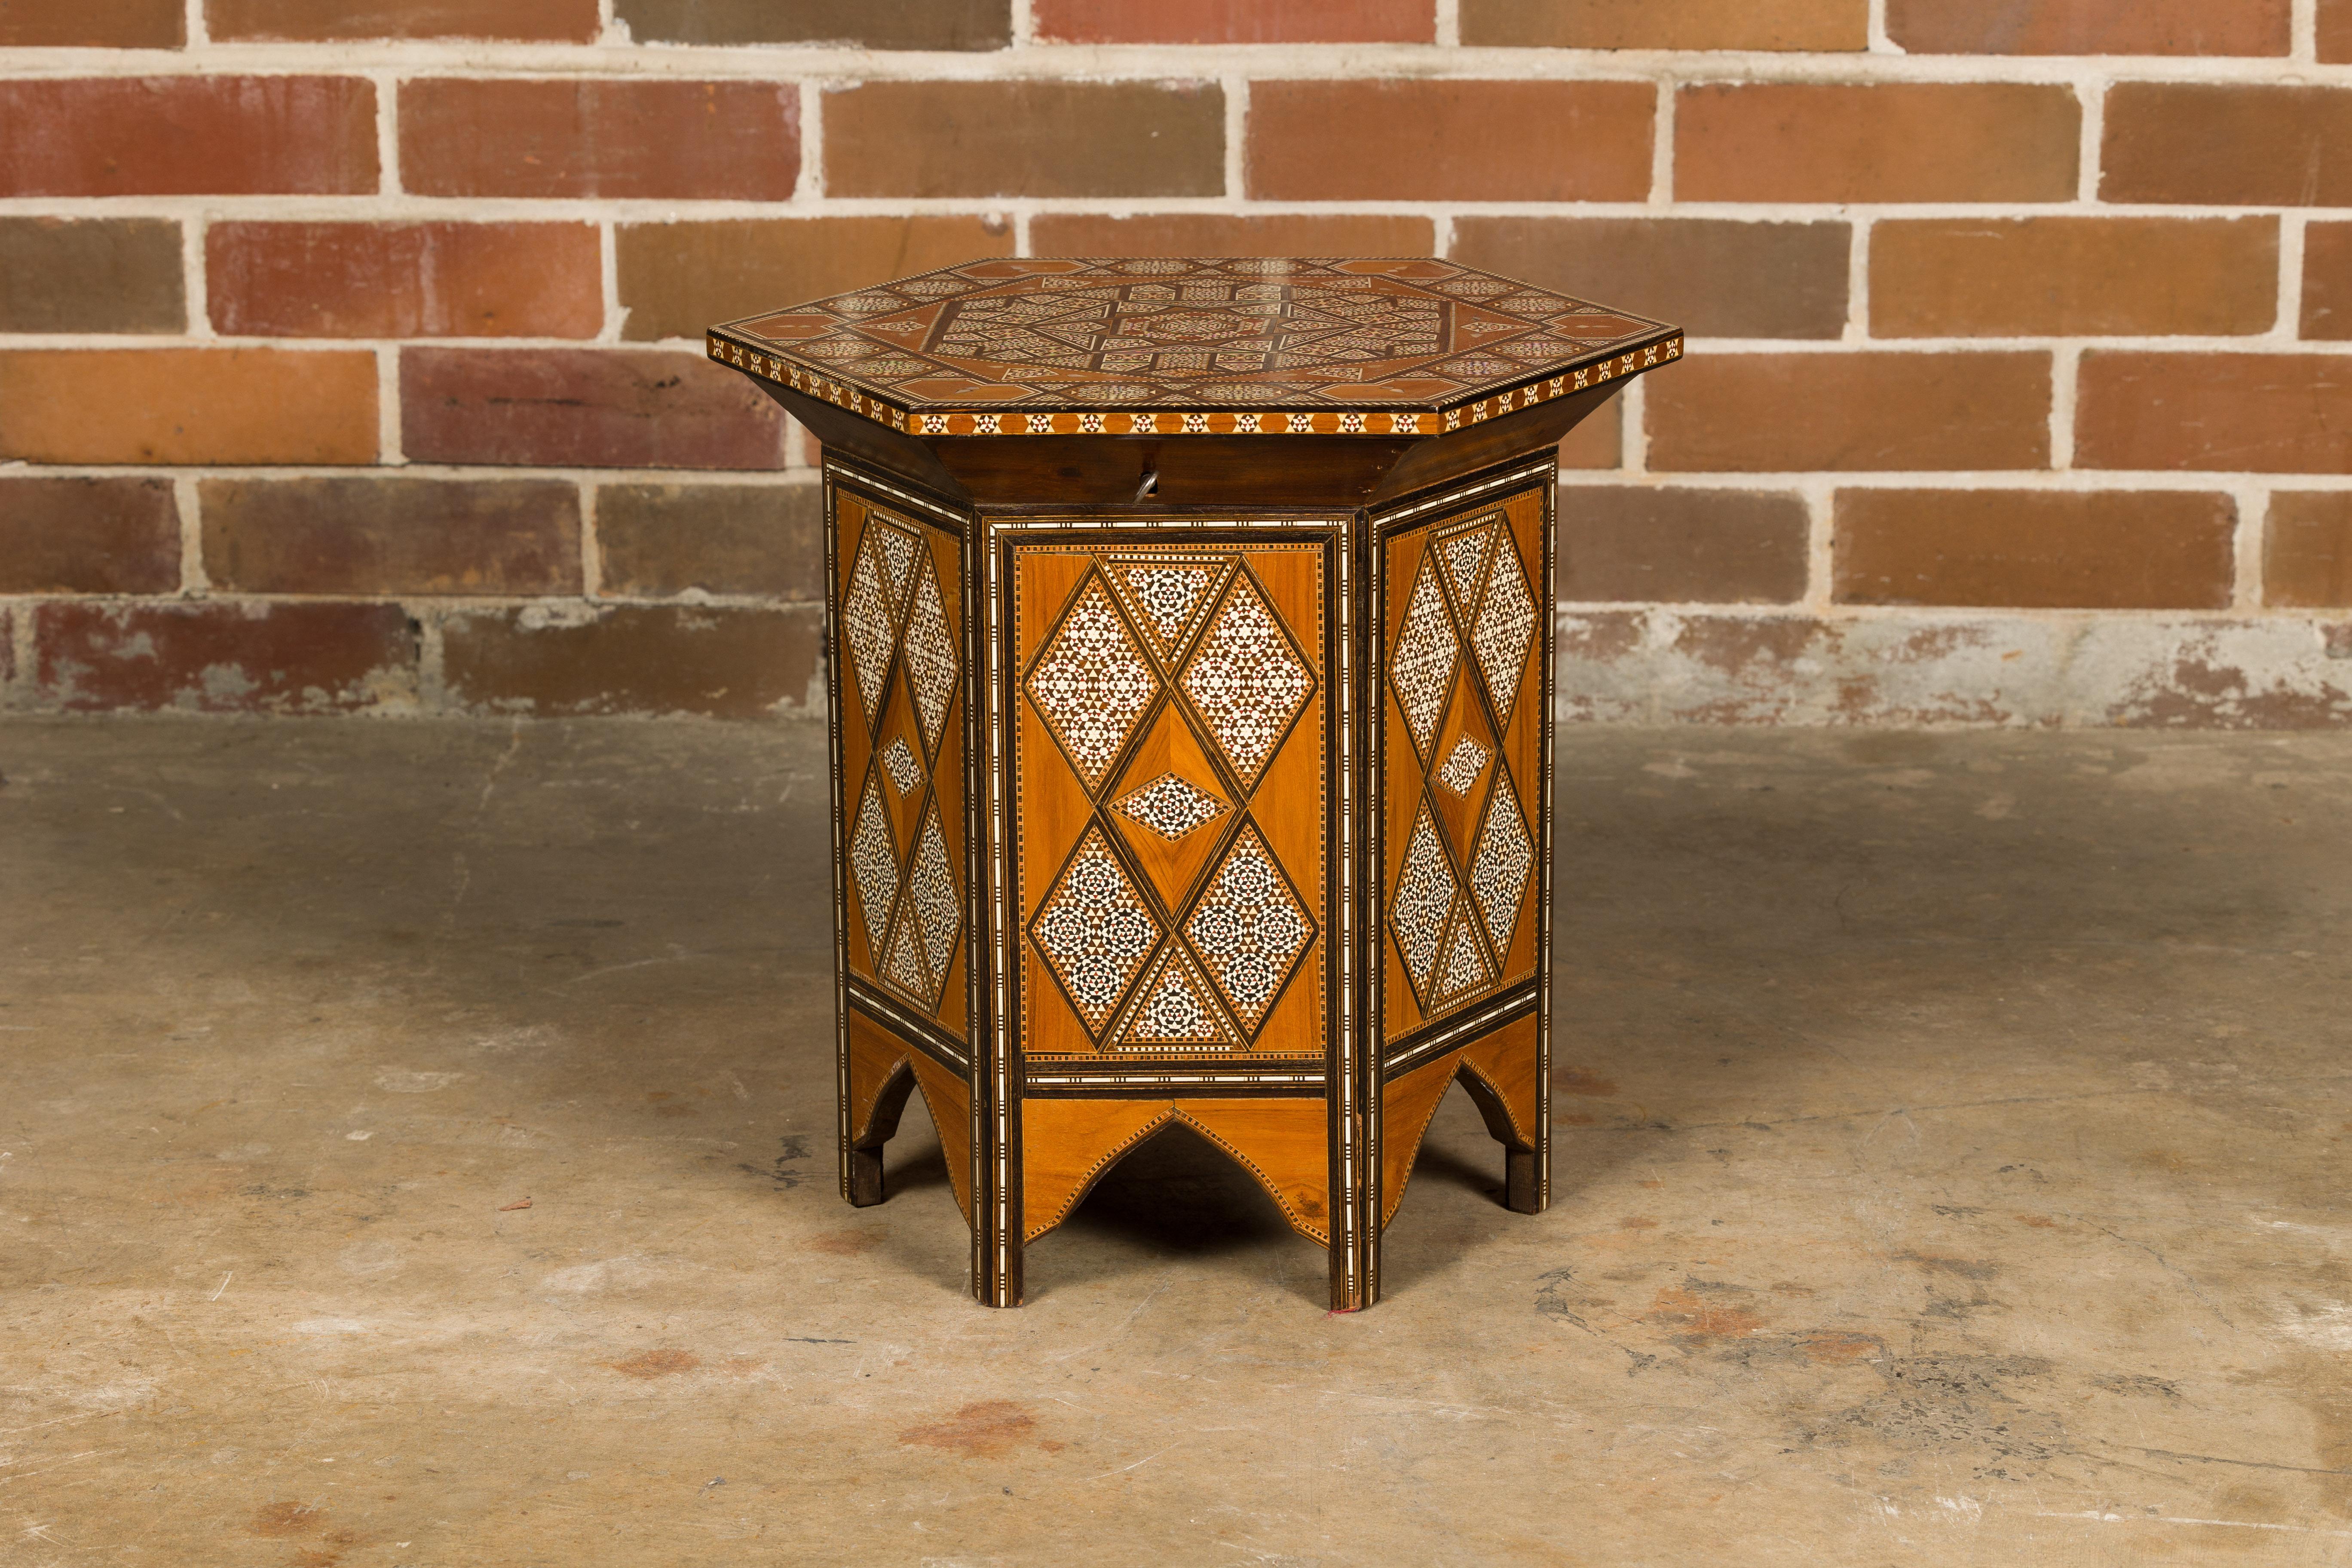 Table à boissons marocaine de style mauresque, datant d'environ 1920, avec d'abondantes incrustations géométriques en os et un plateau élévateur. Cette exquise table à boissons marocaine de style mauresque, datant d'environ 1920, est un véritable